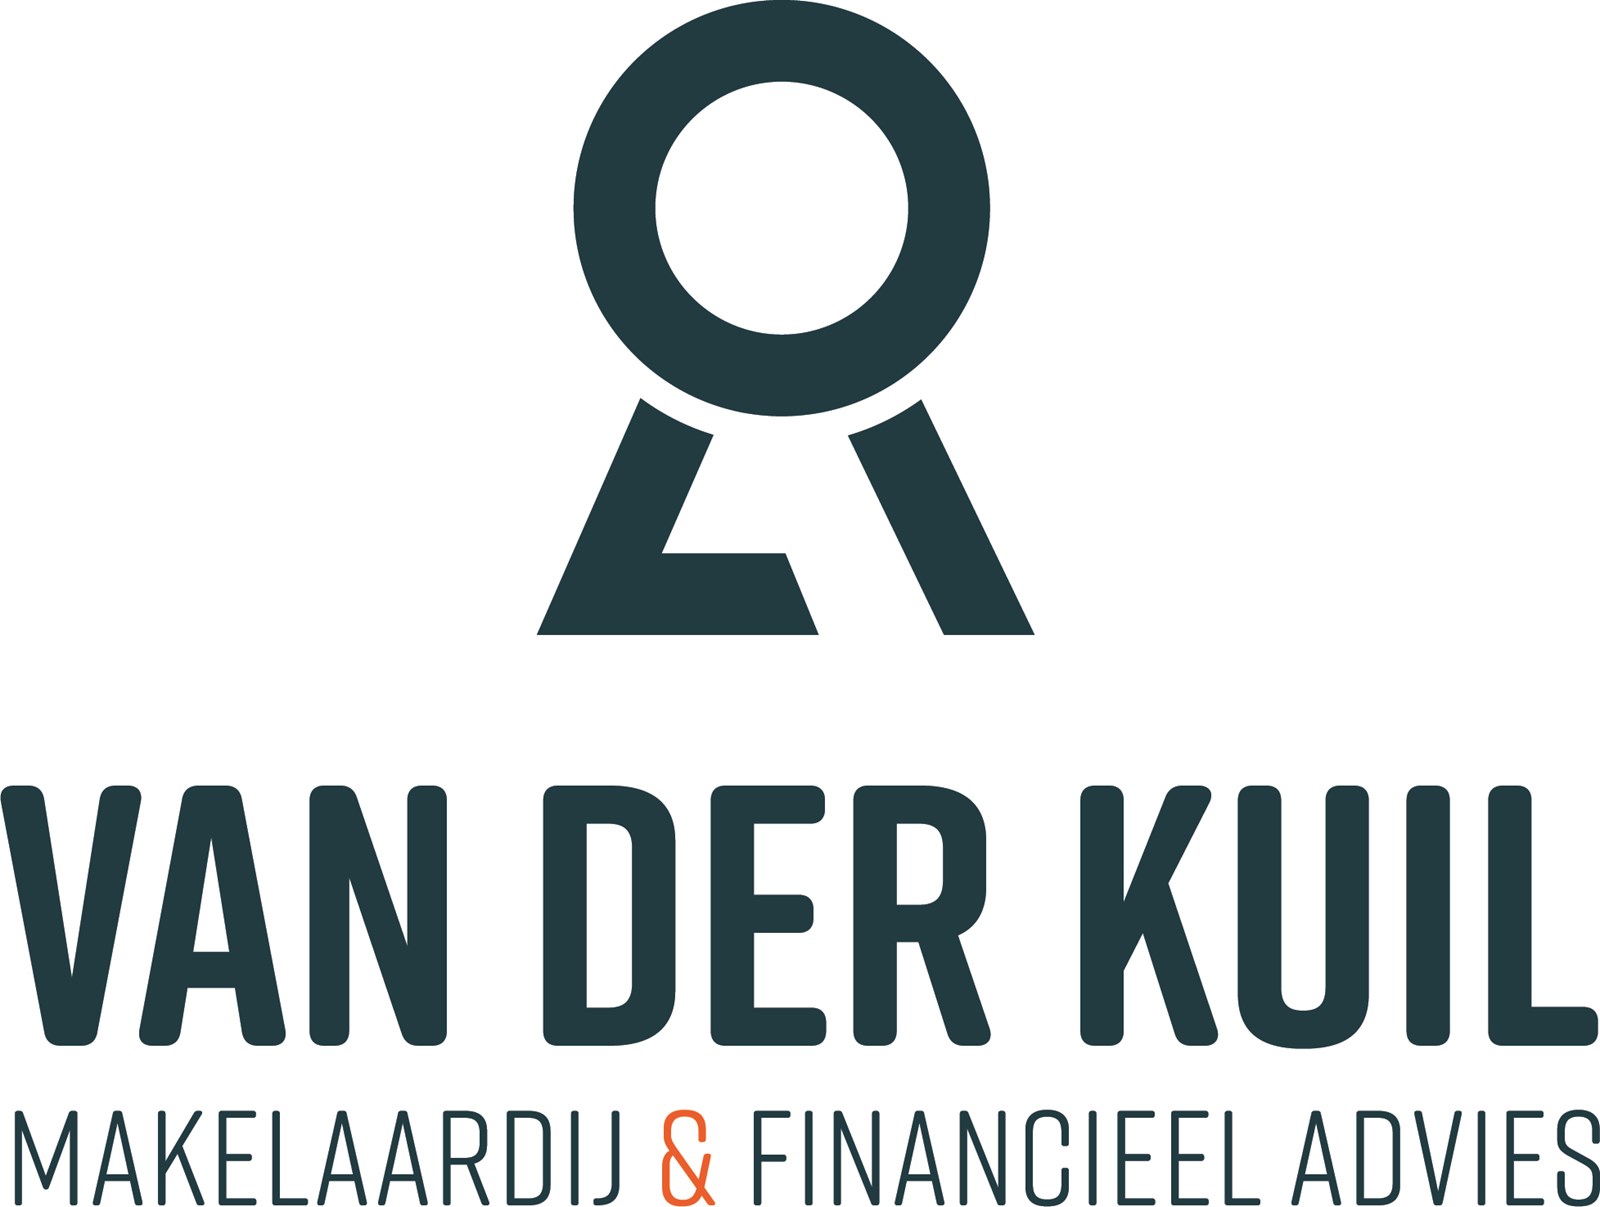 Van der Kuil Makelaardij & Financieel advies